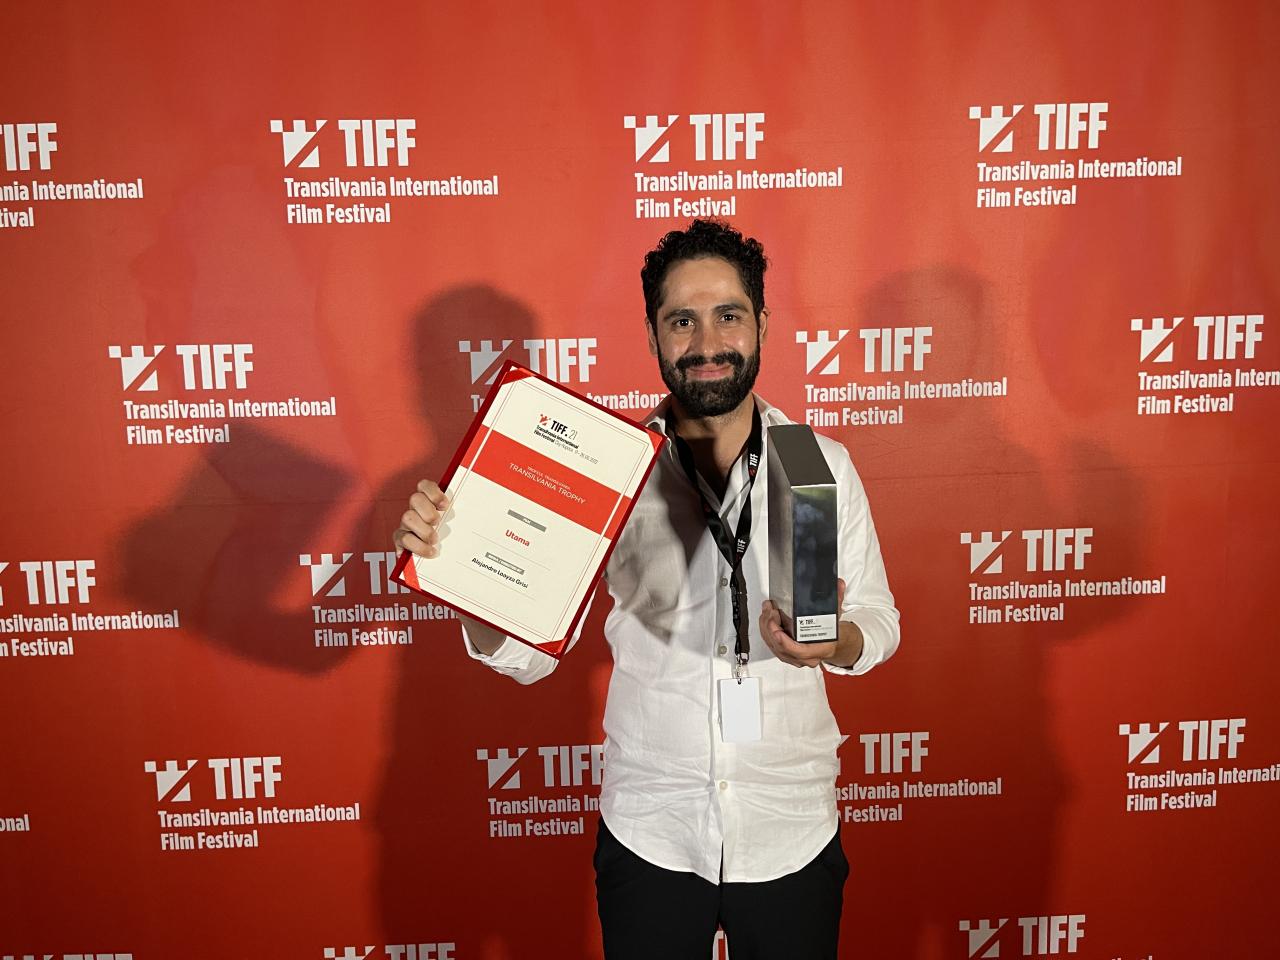 Casa noastră/ Utama a câștigat Trofeul Transilvania la cea de-a 21-a ediție TIFF